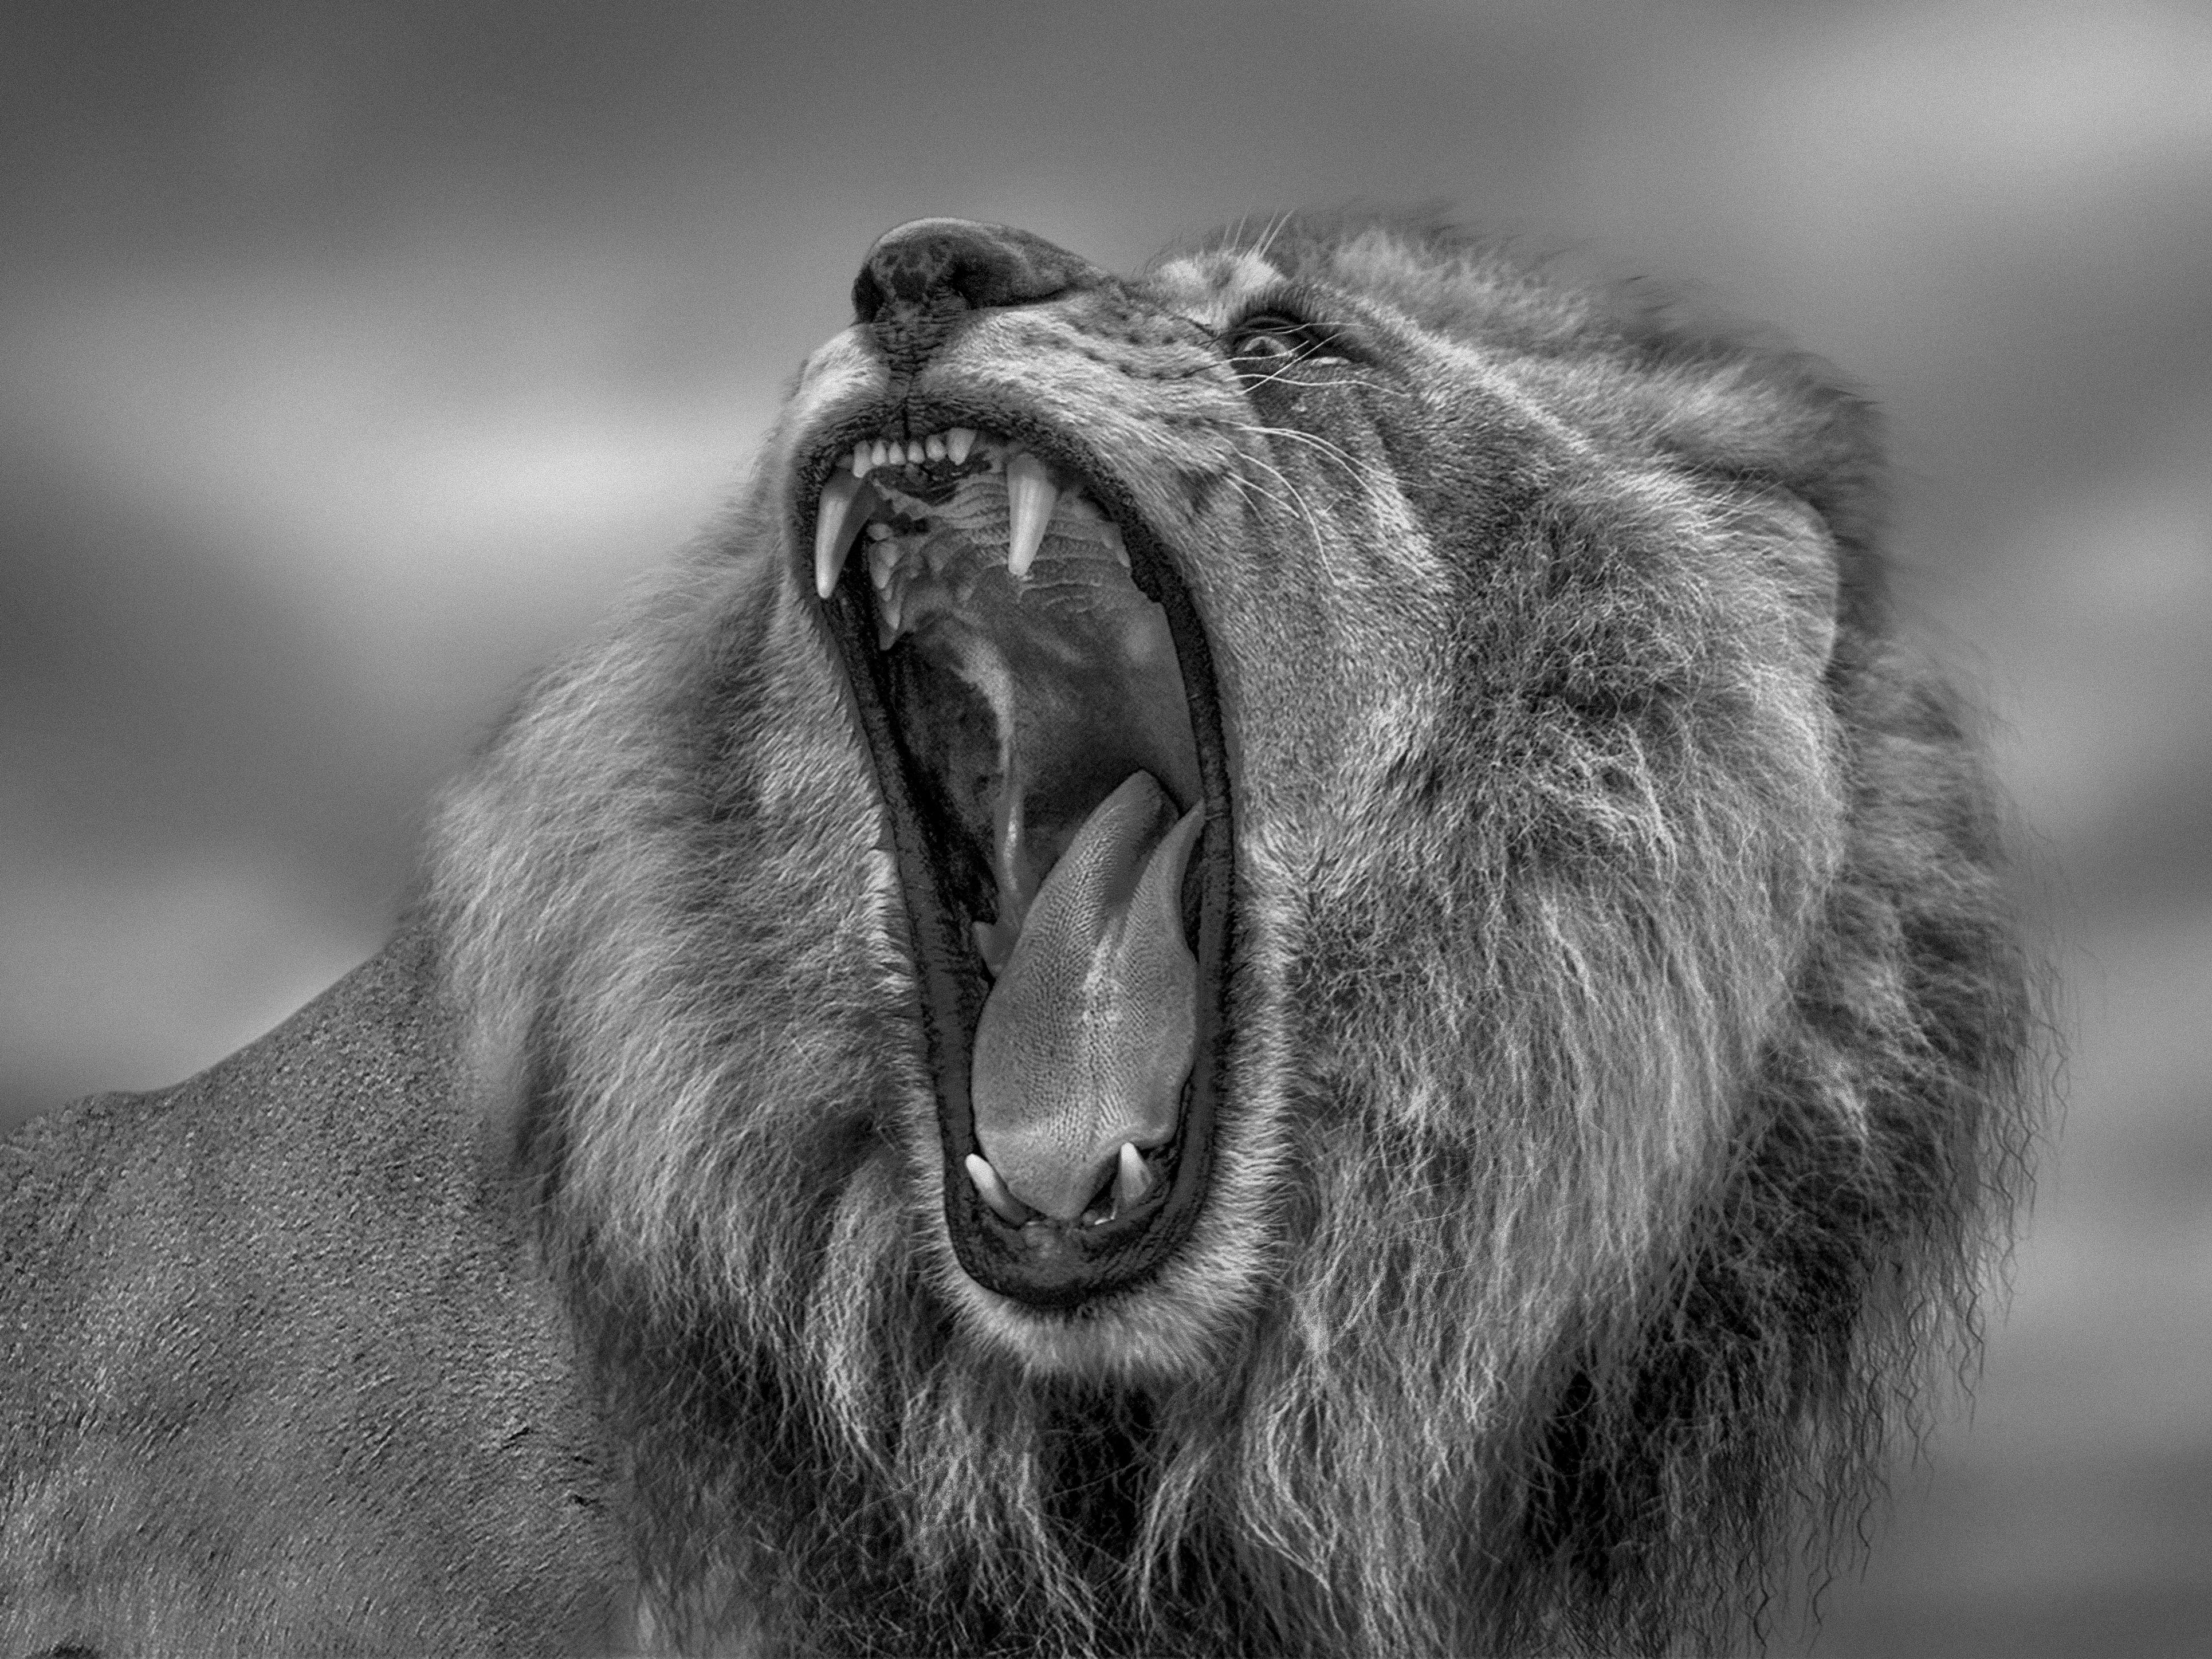 Black and White Photograph Shane Russeck - « Roar » - Photographie de lion noir et blanc 40x60, Afrique, photographie de lion non utilisée